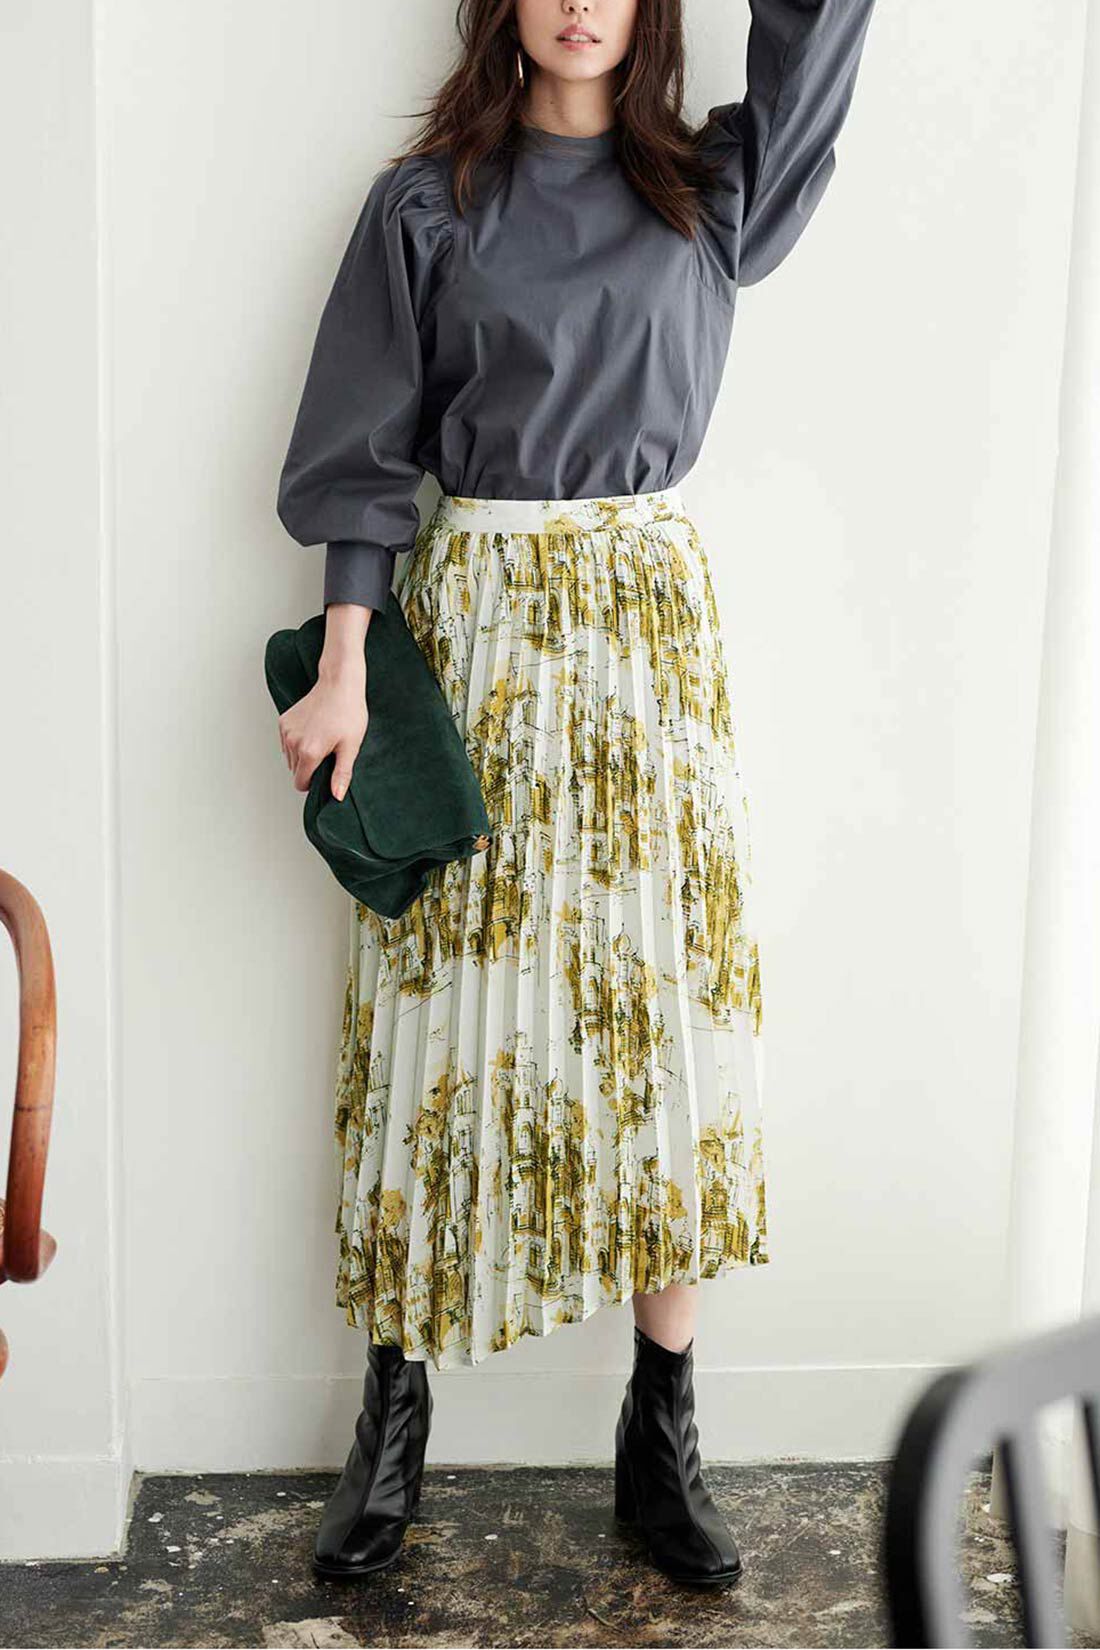 IEDIT[イディット]　ヴィンテージライクな趣のプリントプリーツスカート〈グリーン〉|※着用イメージです。お届けするカラーとは異なります。